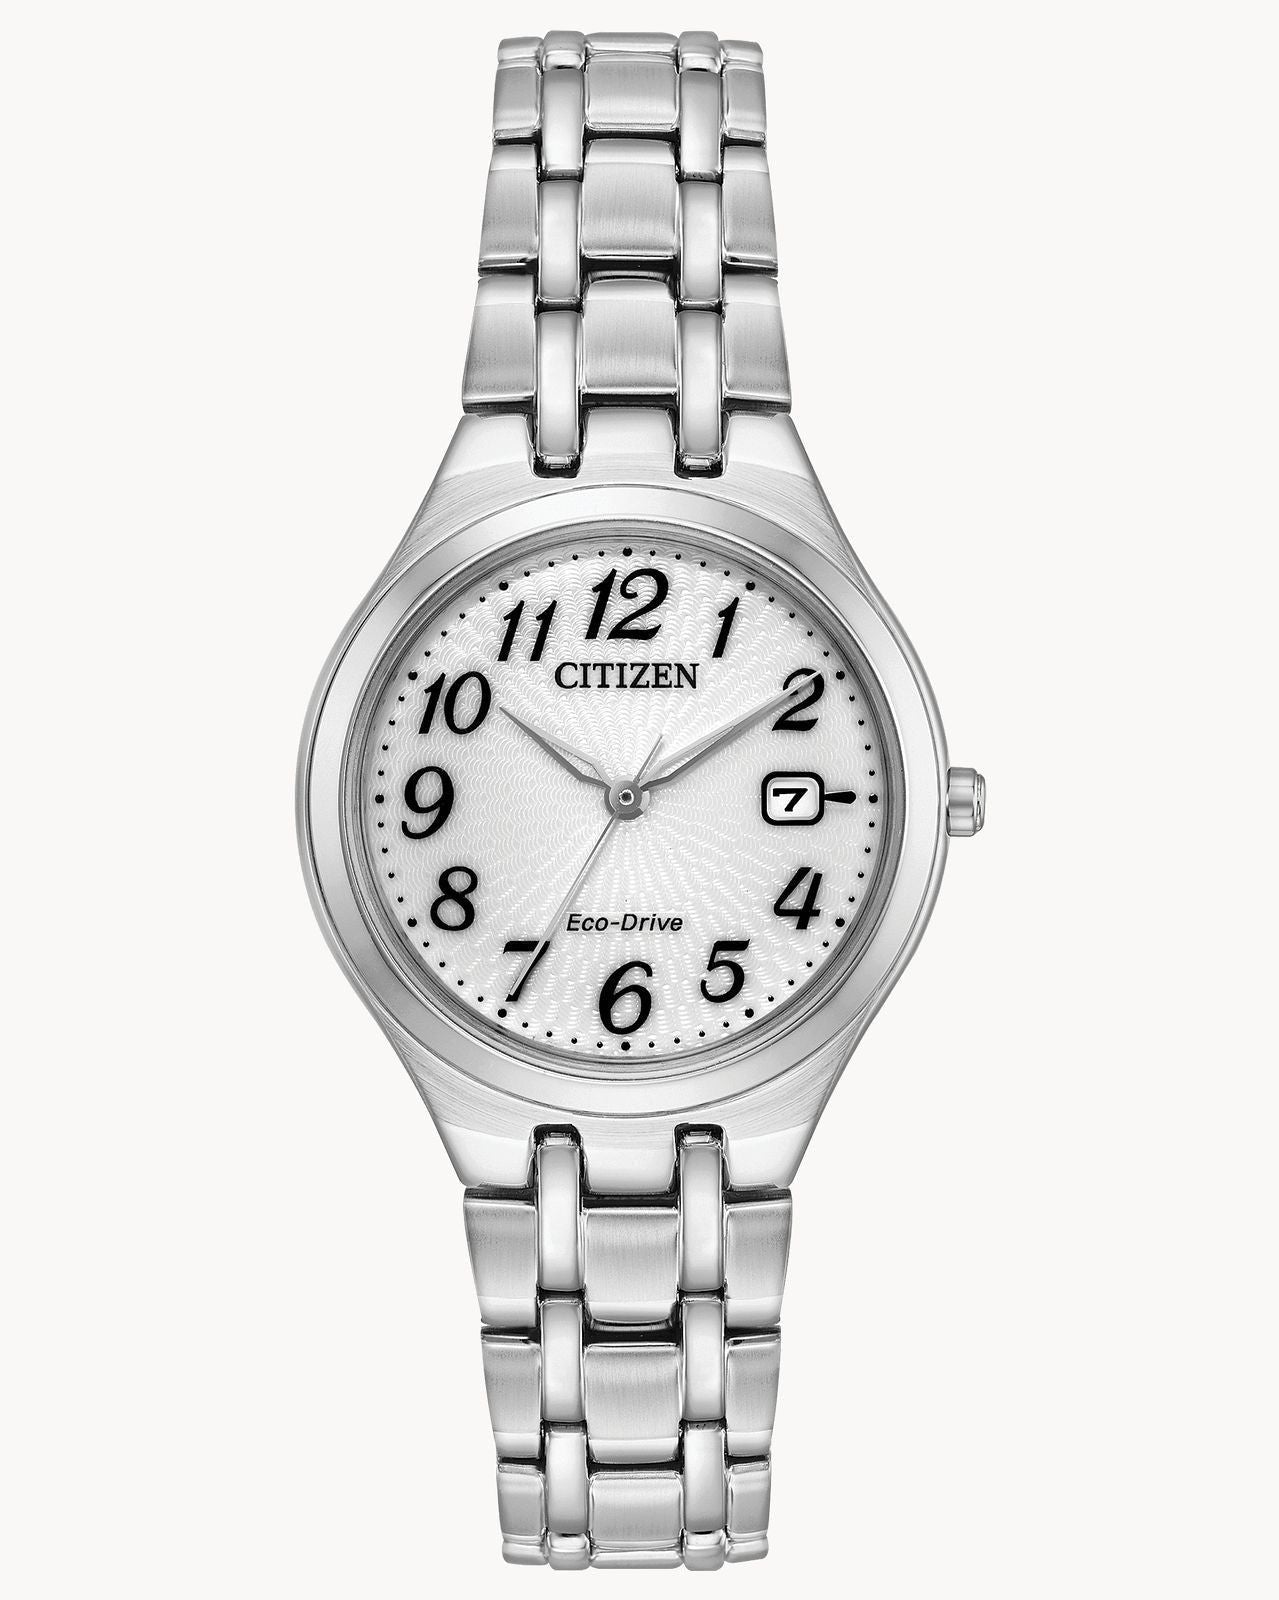 Citizen Eco-Drive Corso Silver-Tone Strap Watch (Model EW2480-59A)